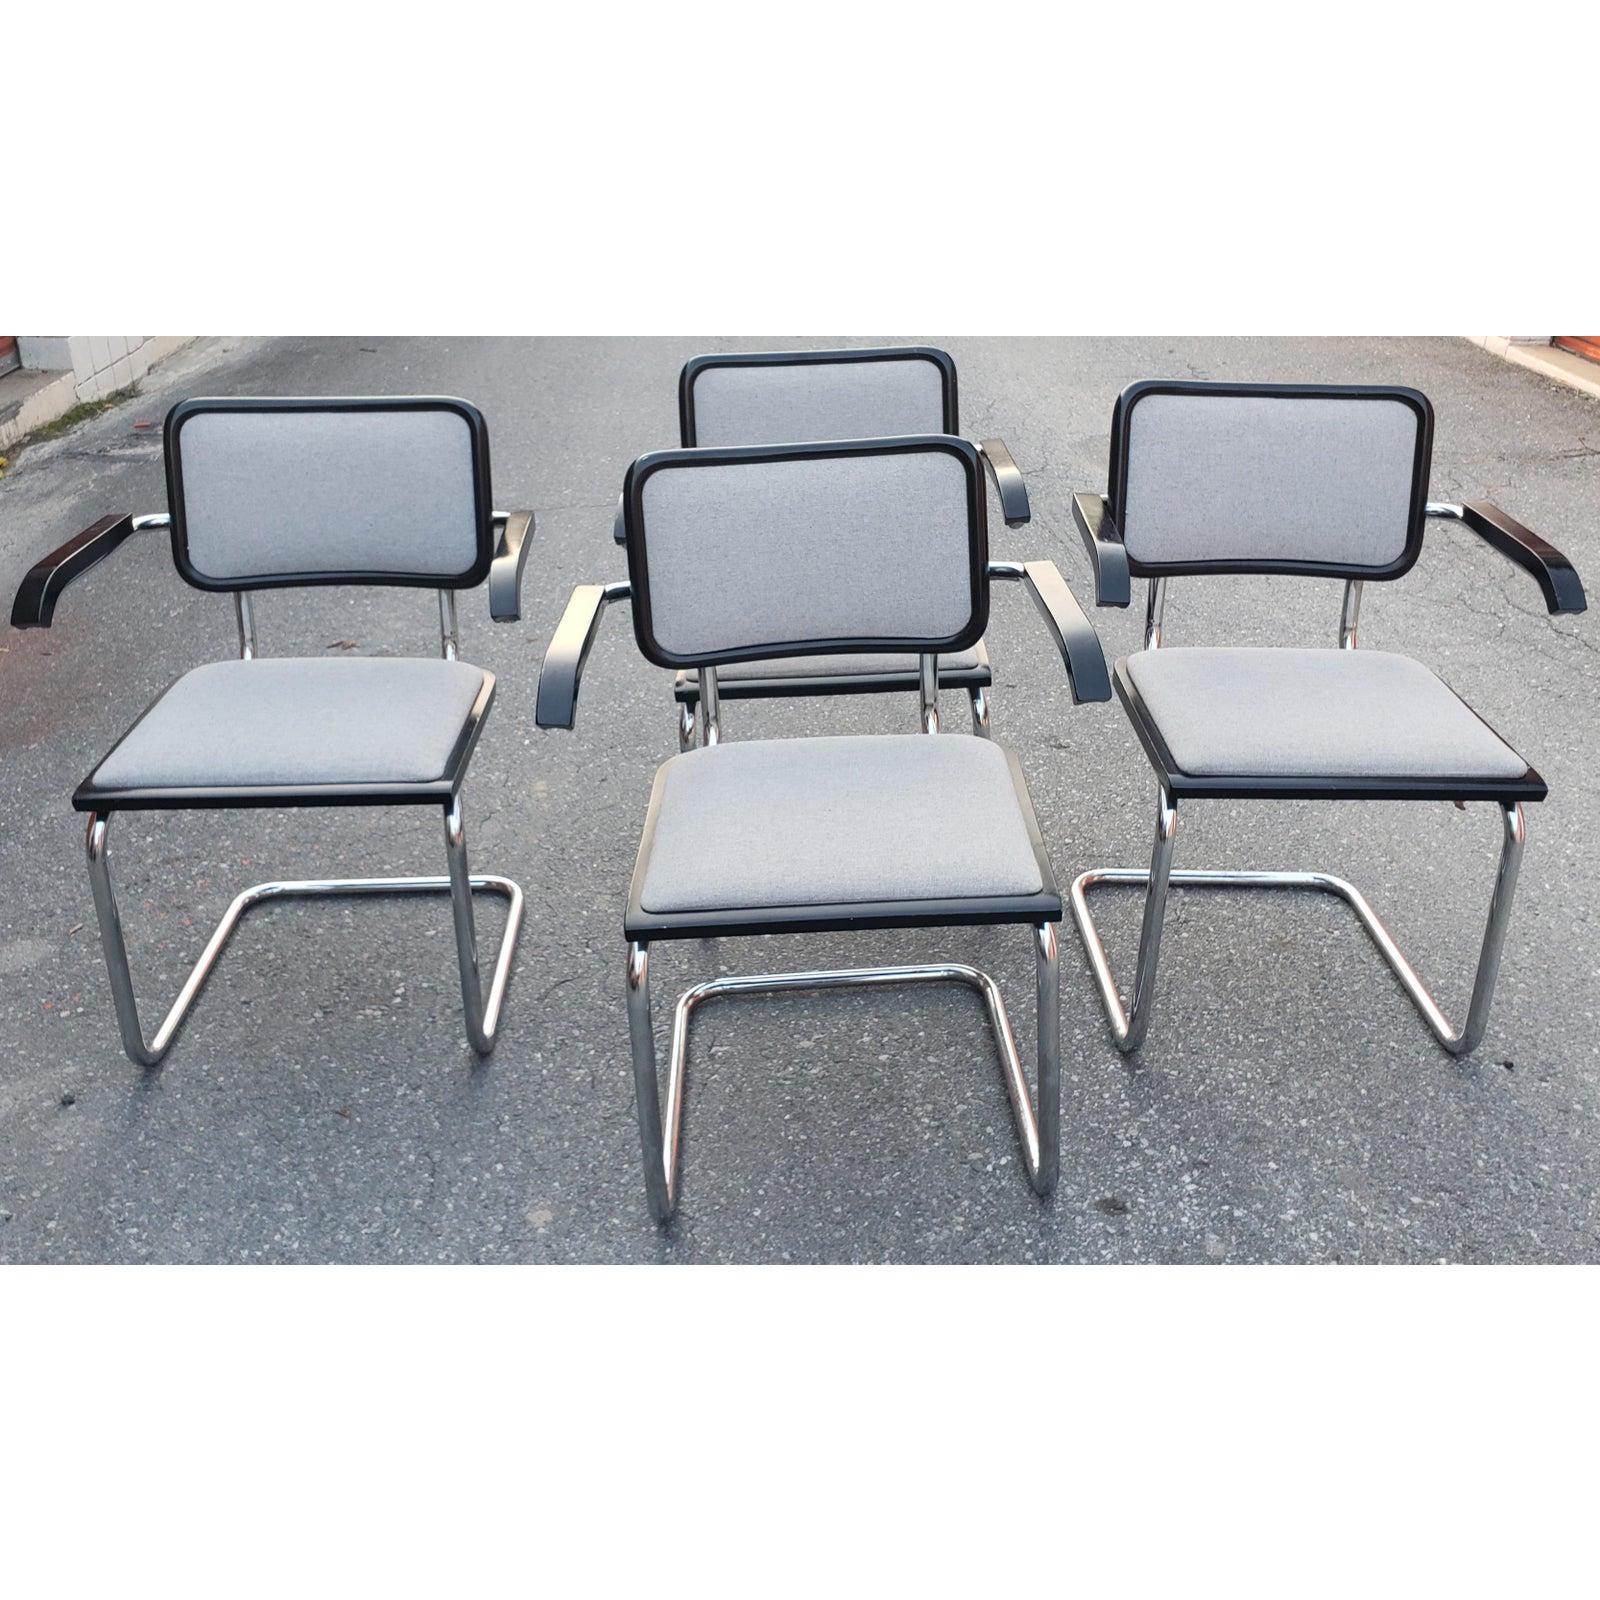 Ensemble iconique de quatre fauteuils cantilever Cesca S64 de Marcel Breuer avec une finition de la structure en hêtre laqué ébonisé. Magnifiquement fabriqué à partir de cadres tubulaires en acier chromé et commandé dans une combinaison rare de noir